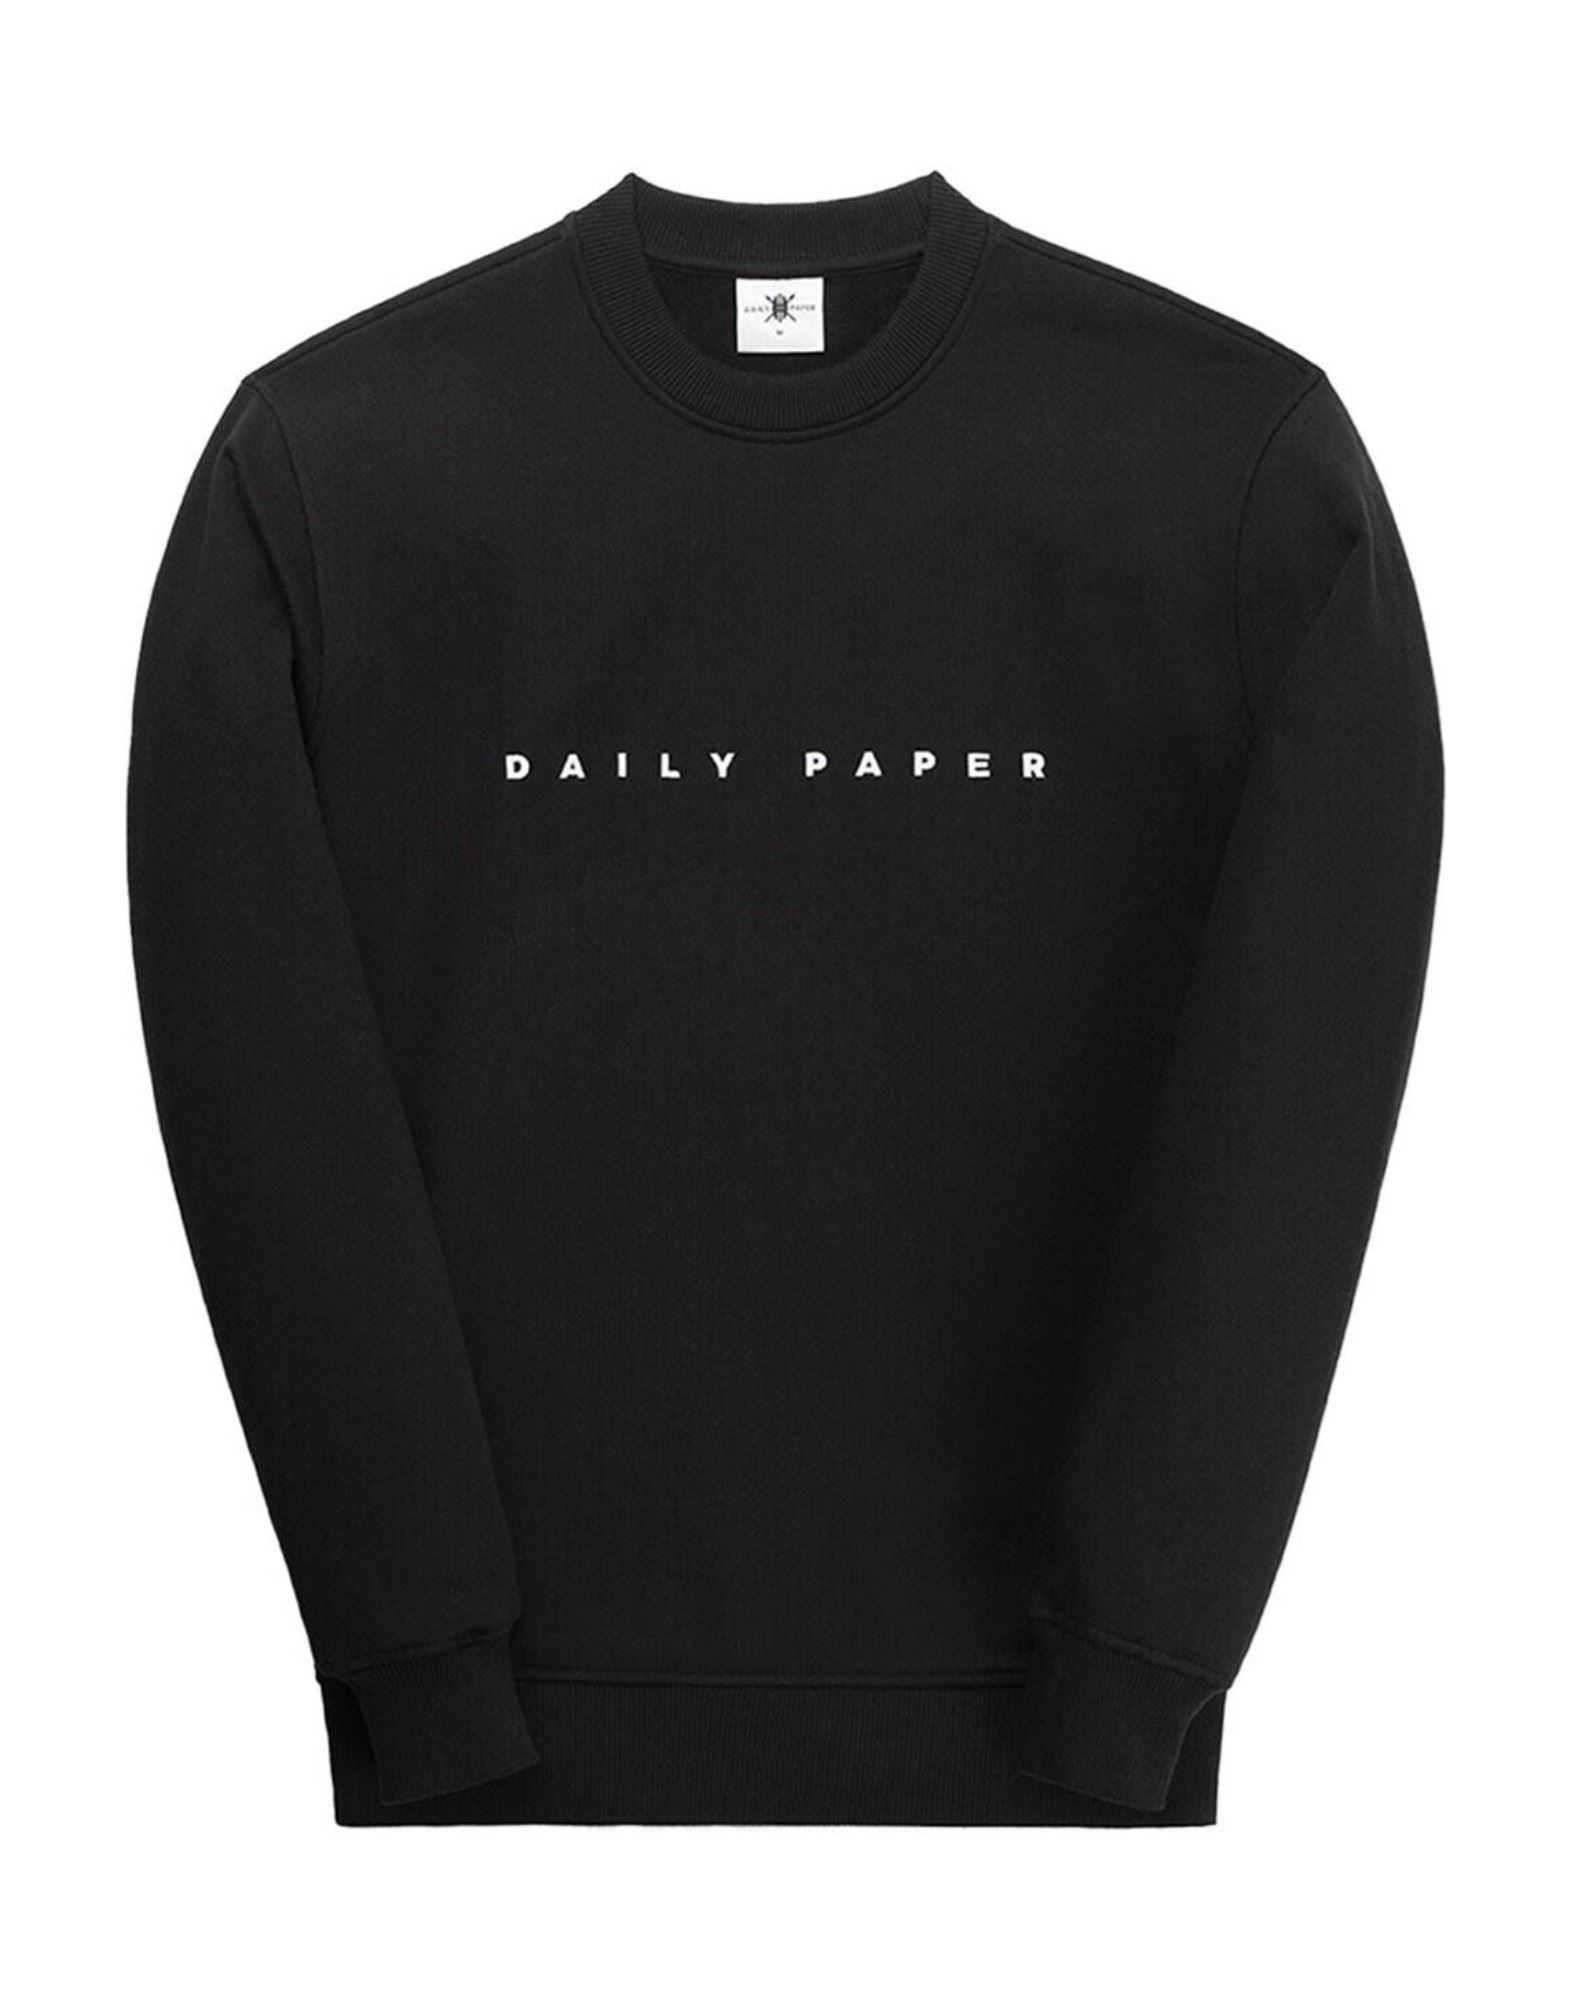 DAILY PAPER Sweatshirt Herren Schwarz von DAILY PAPER